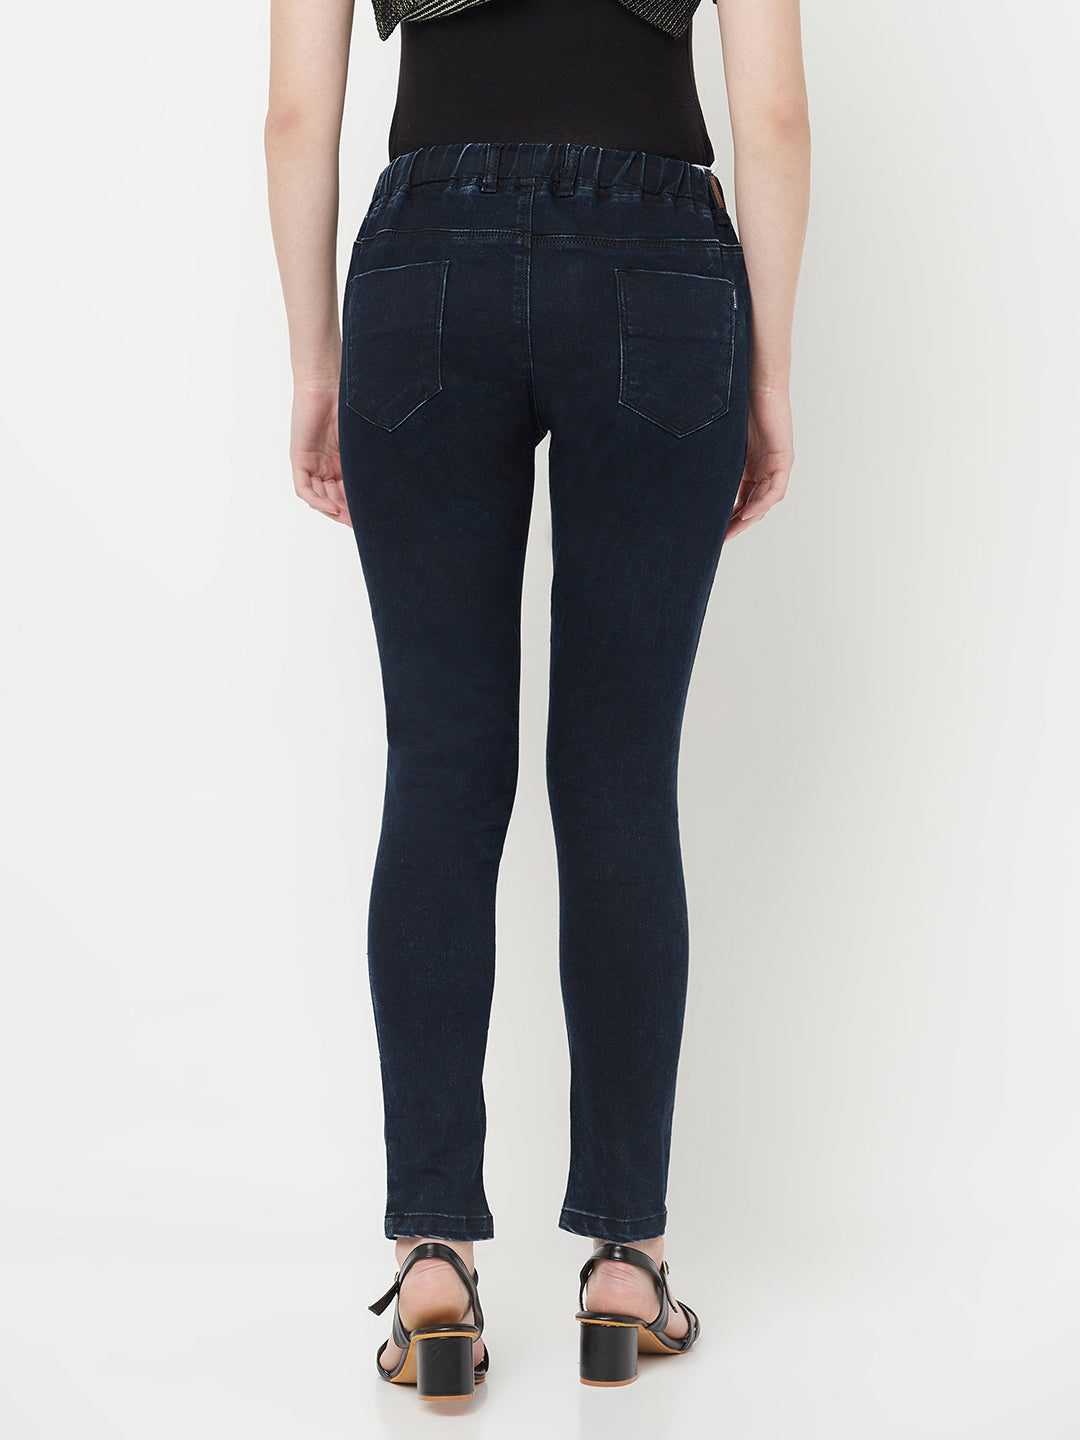 Navy Blue Jeans - Women Jeans